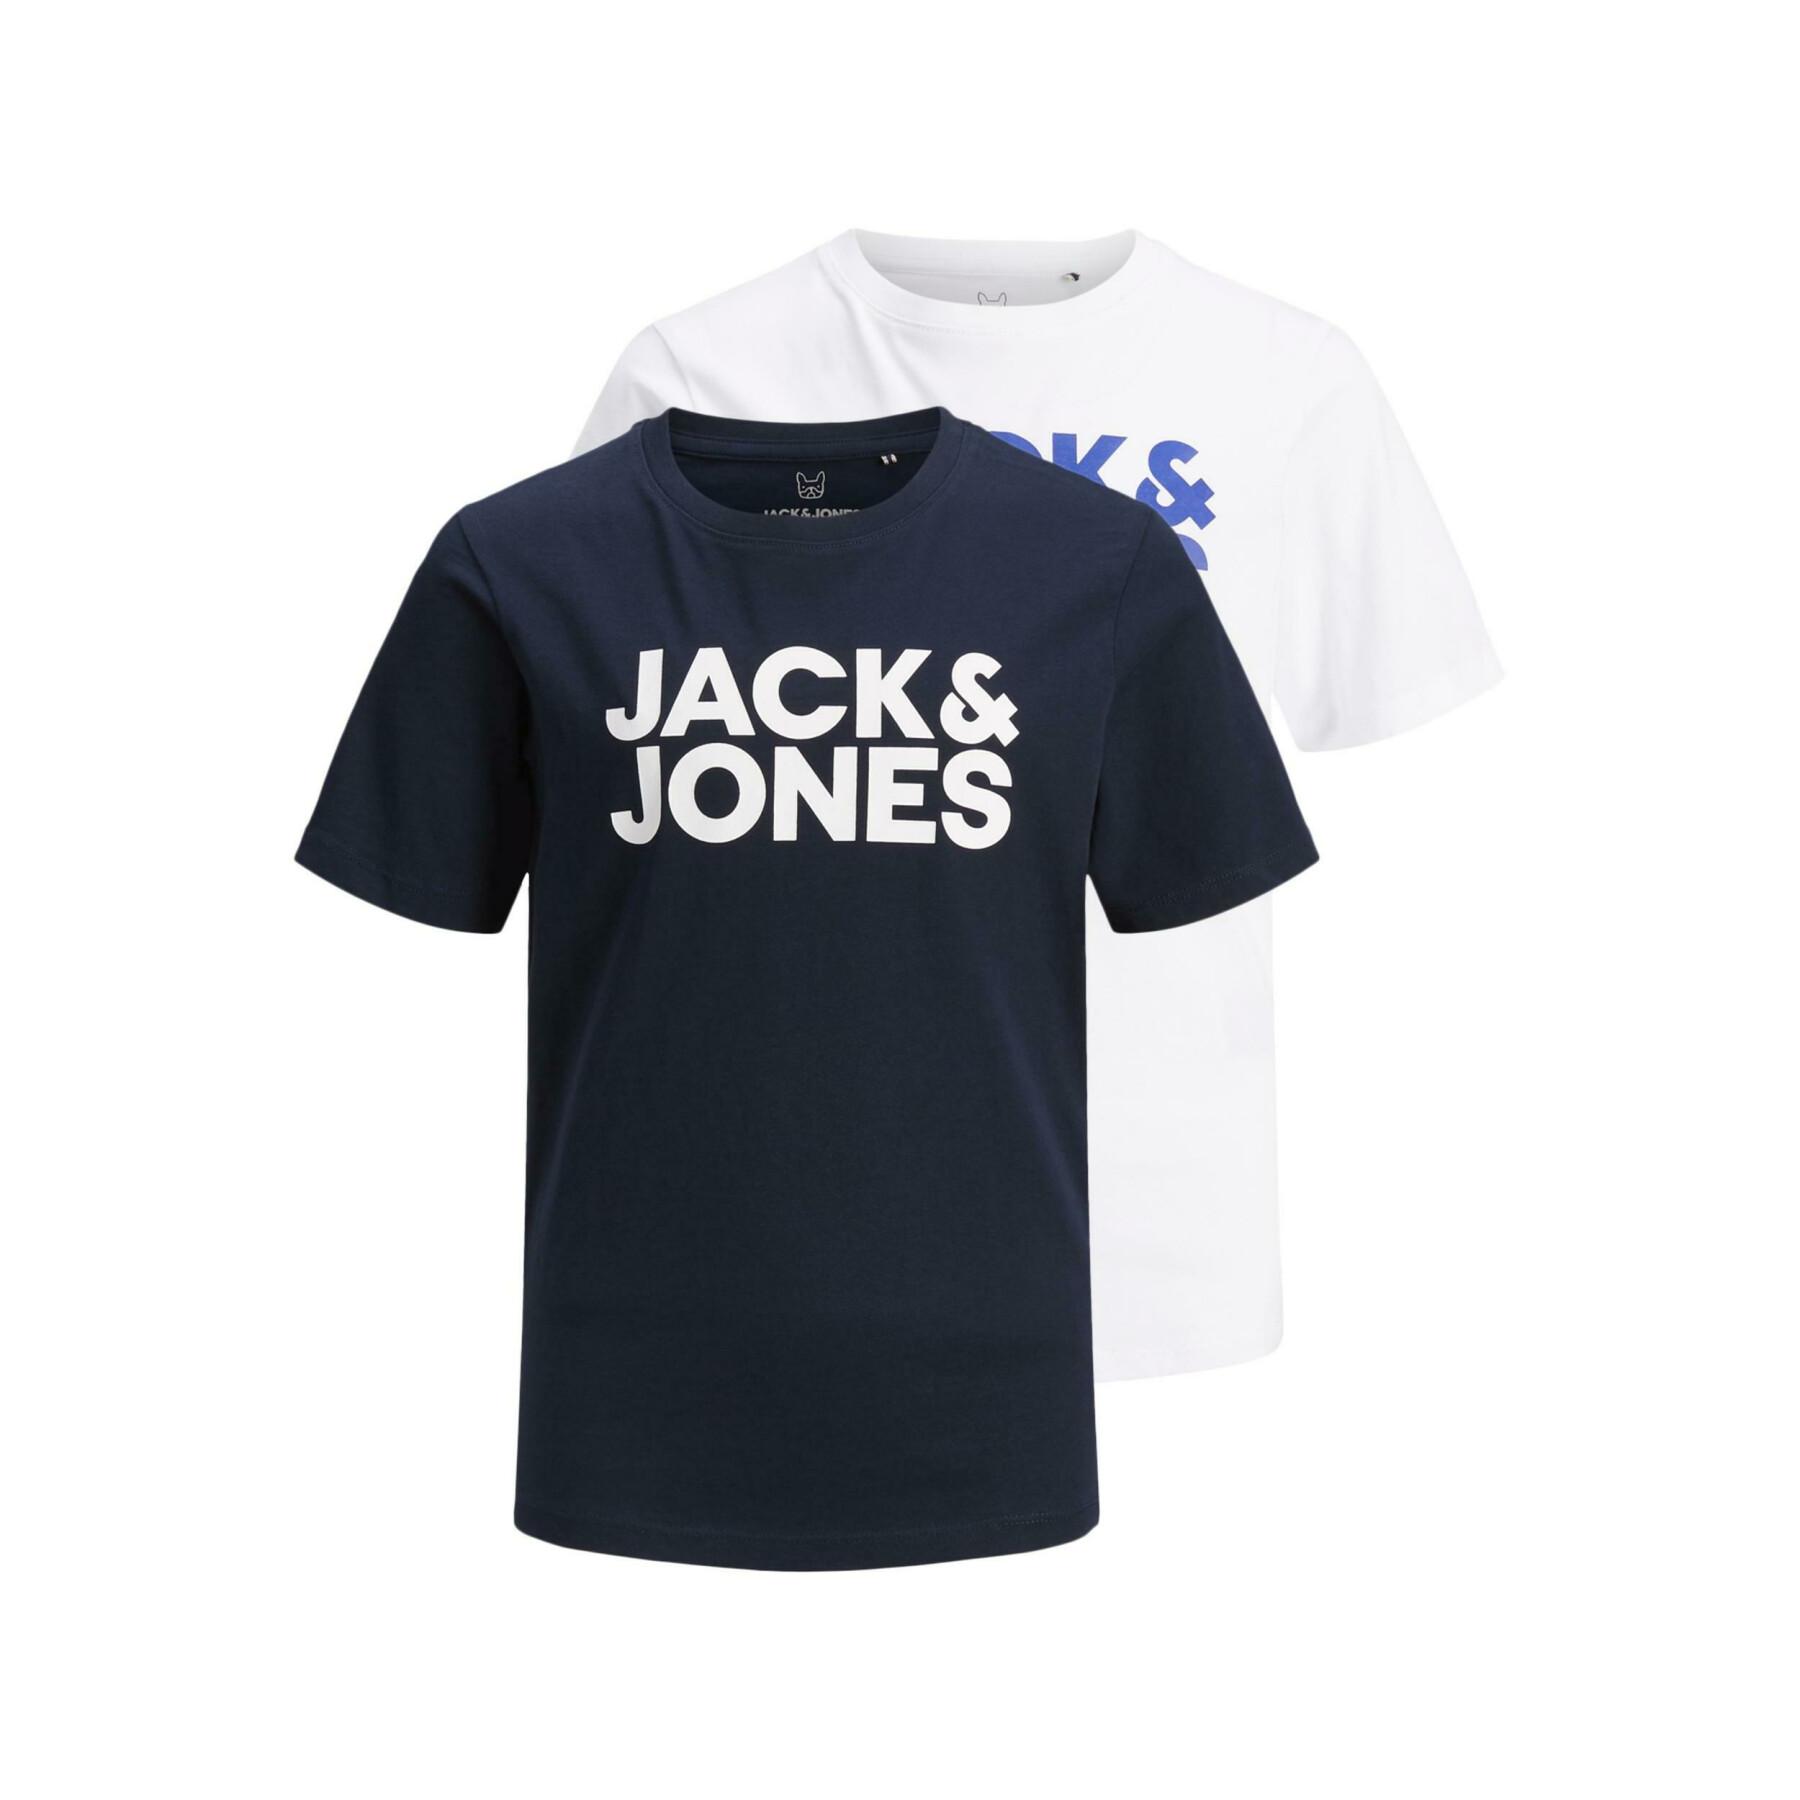 Juego de 2 camisetas para niños Jack & Jones corp logo